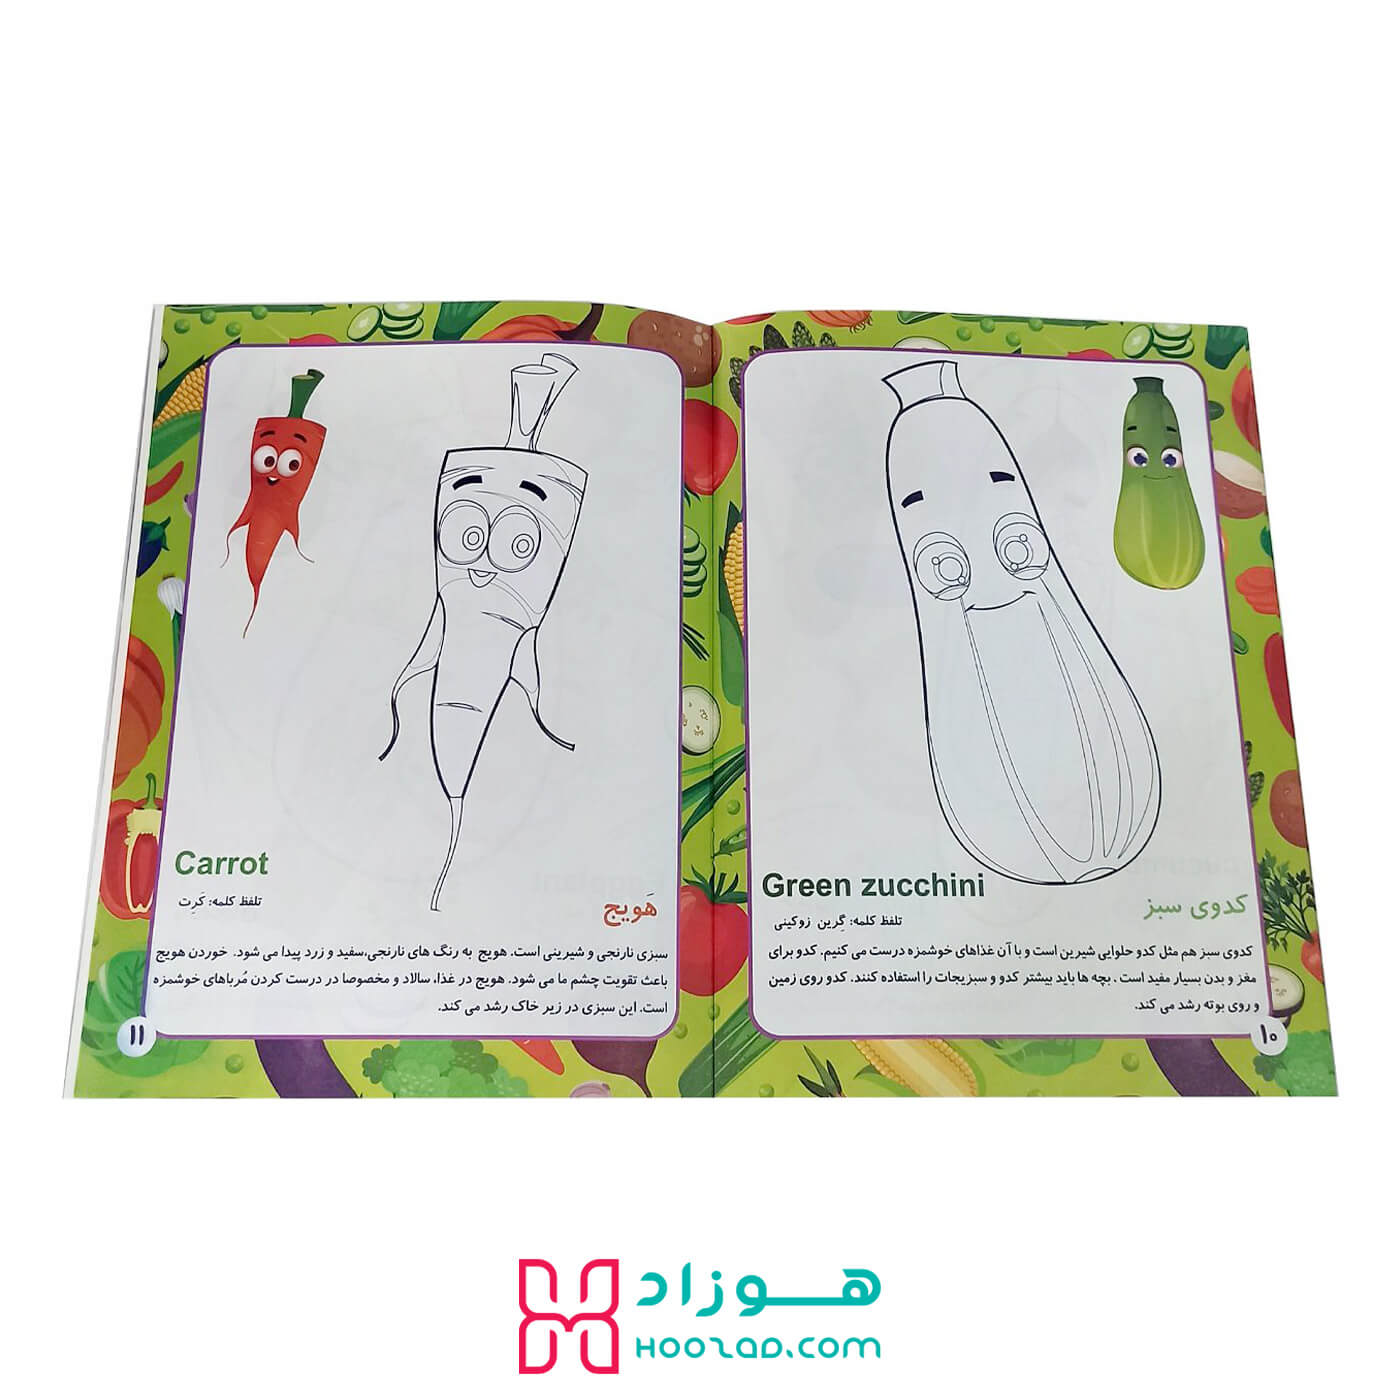 کتاب آموزش جادویی سبزیجات برای کودکان نمونه صفحه کتاب